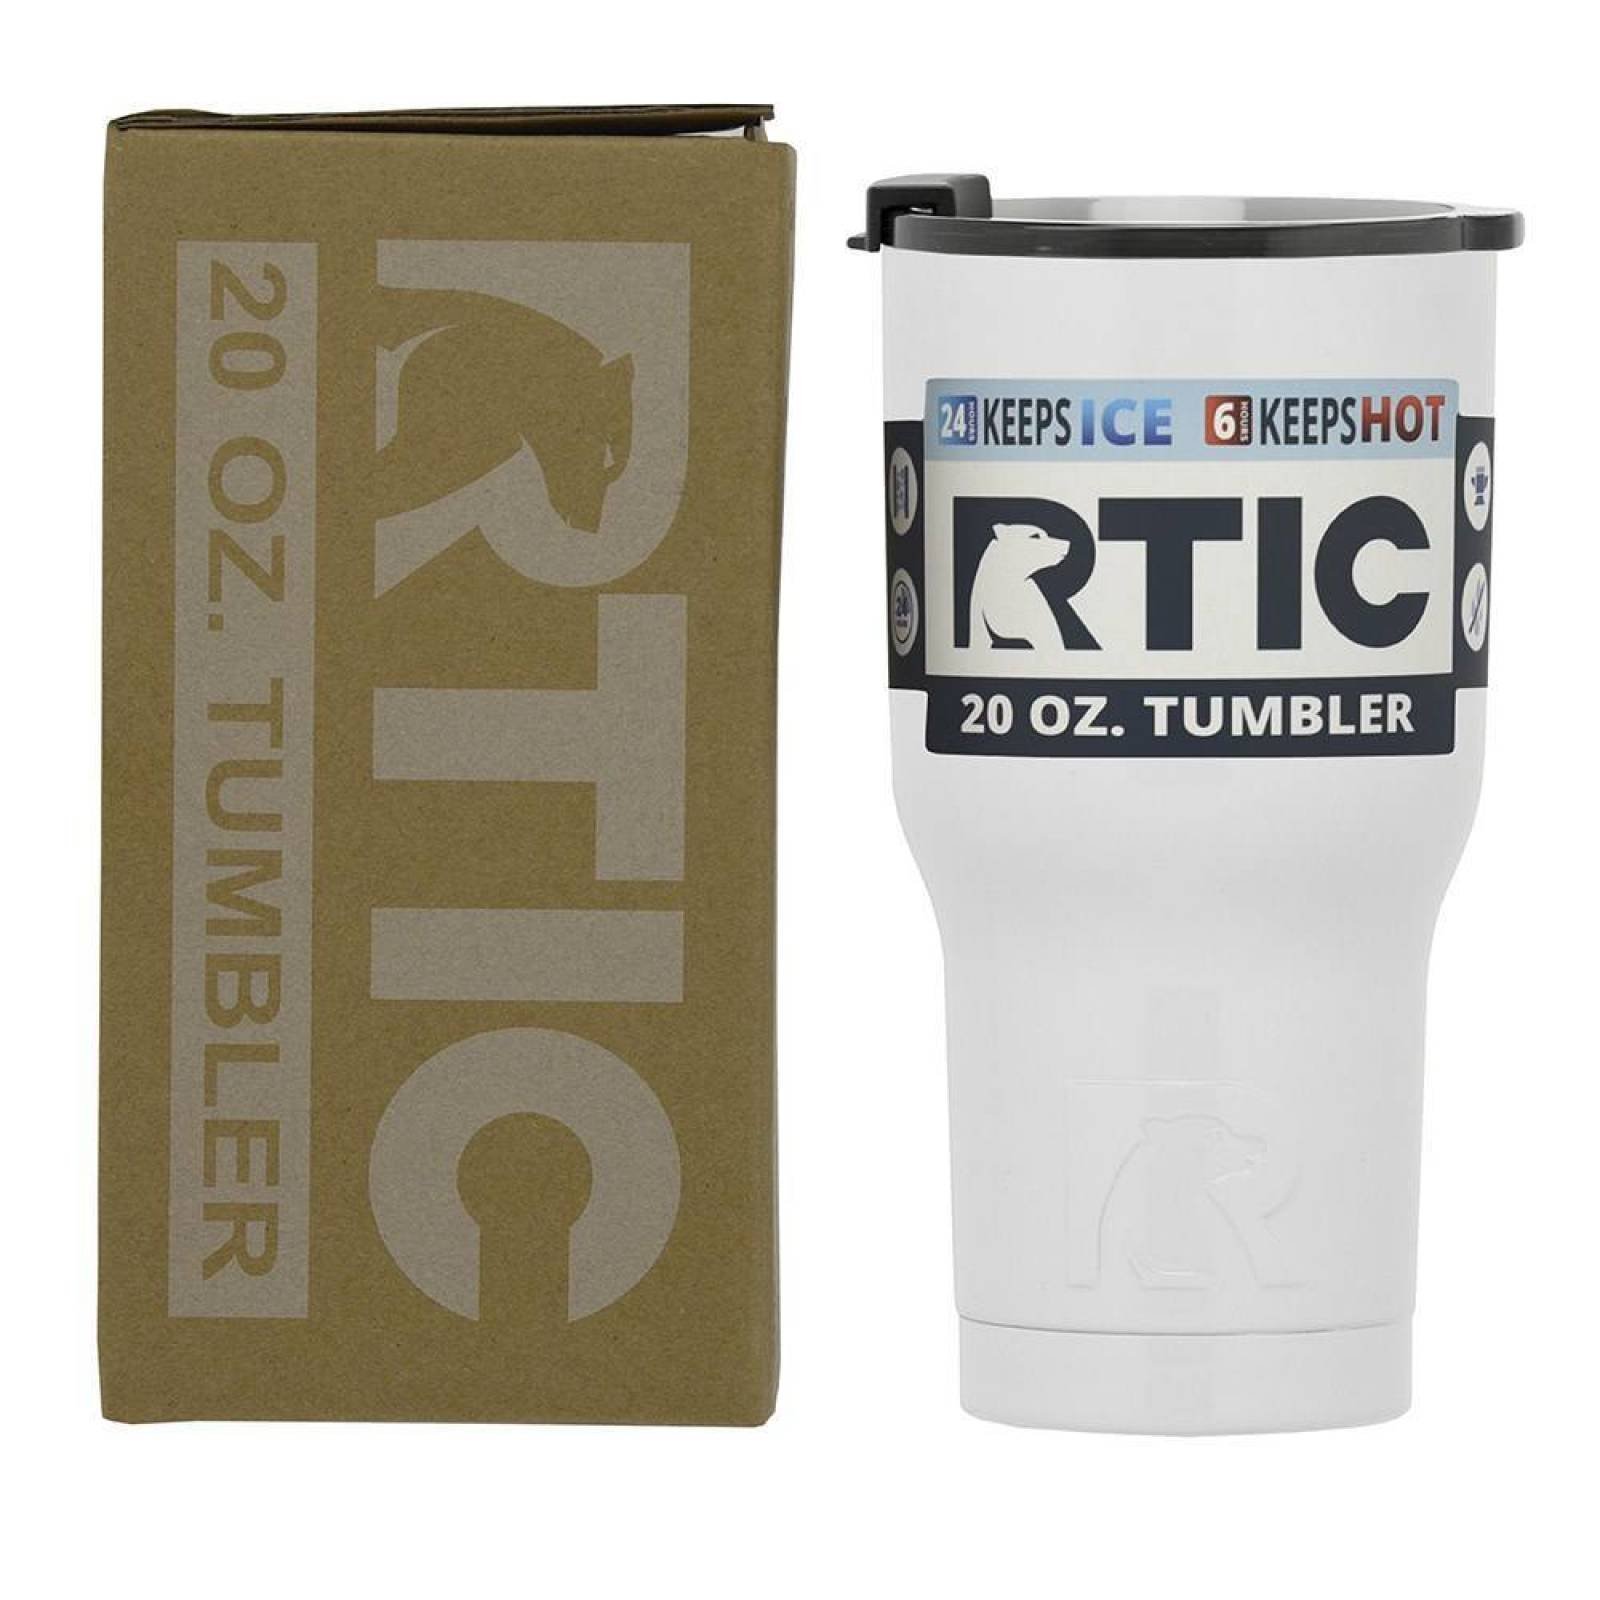 RTIC Tumbler 20 oz. White   120